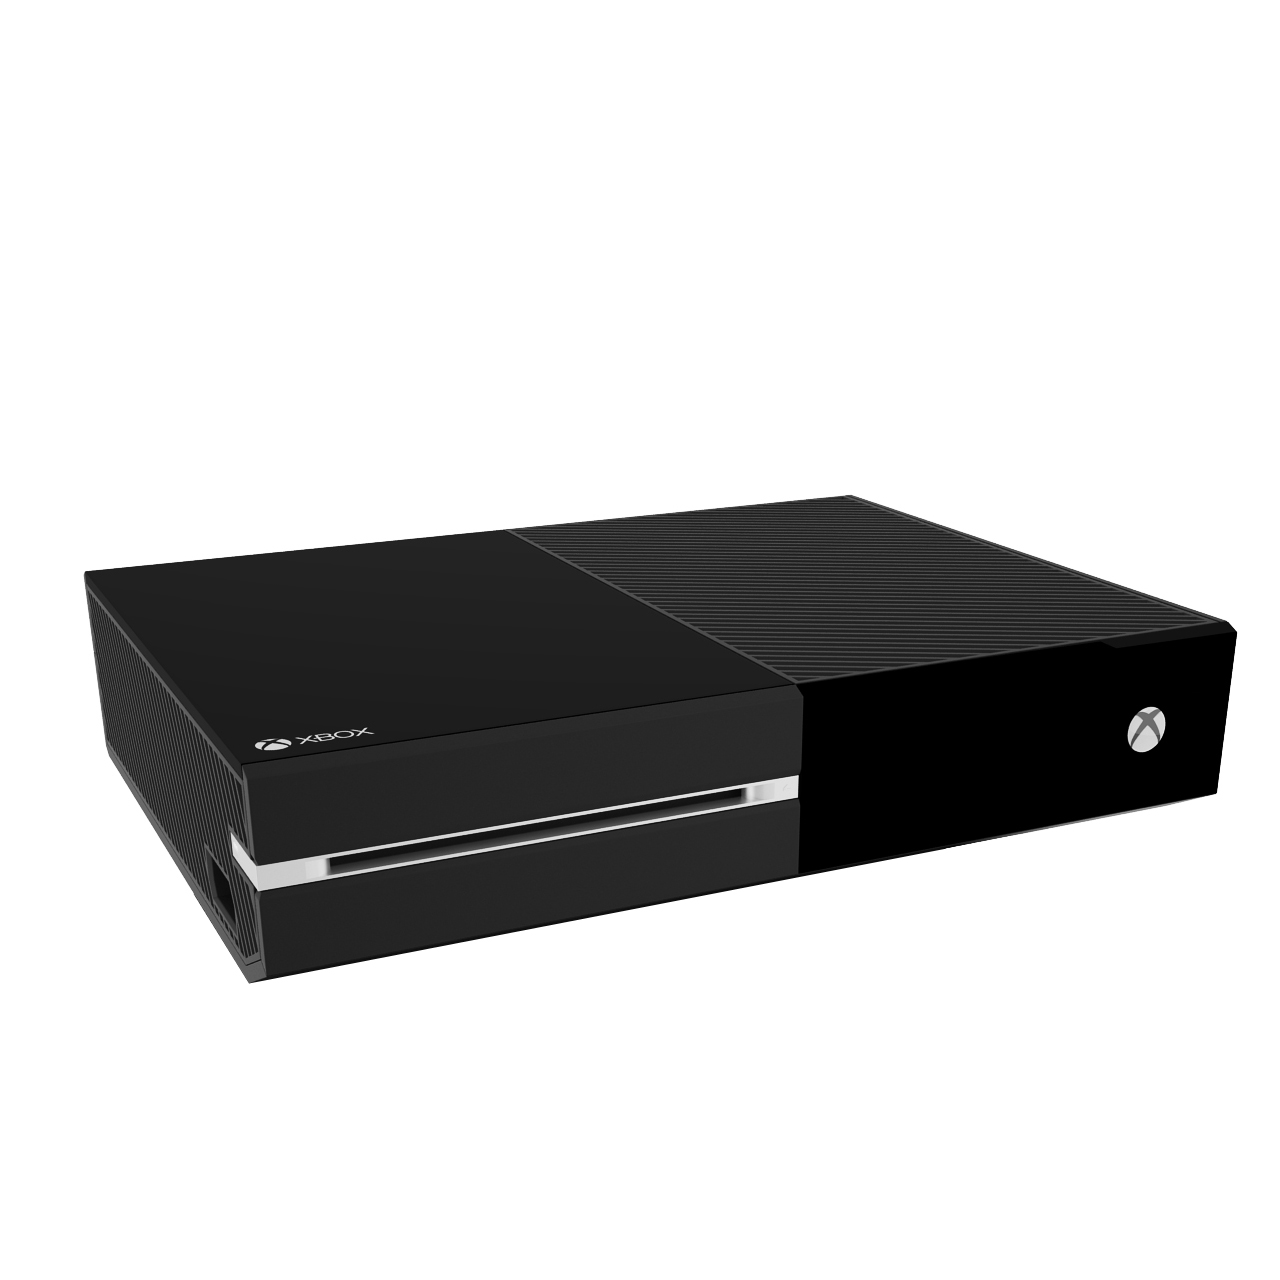 Xbox ONE by Microsoft